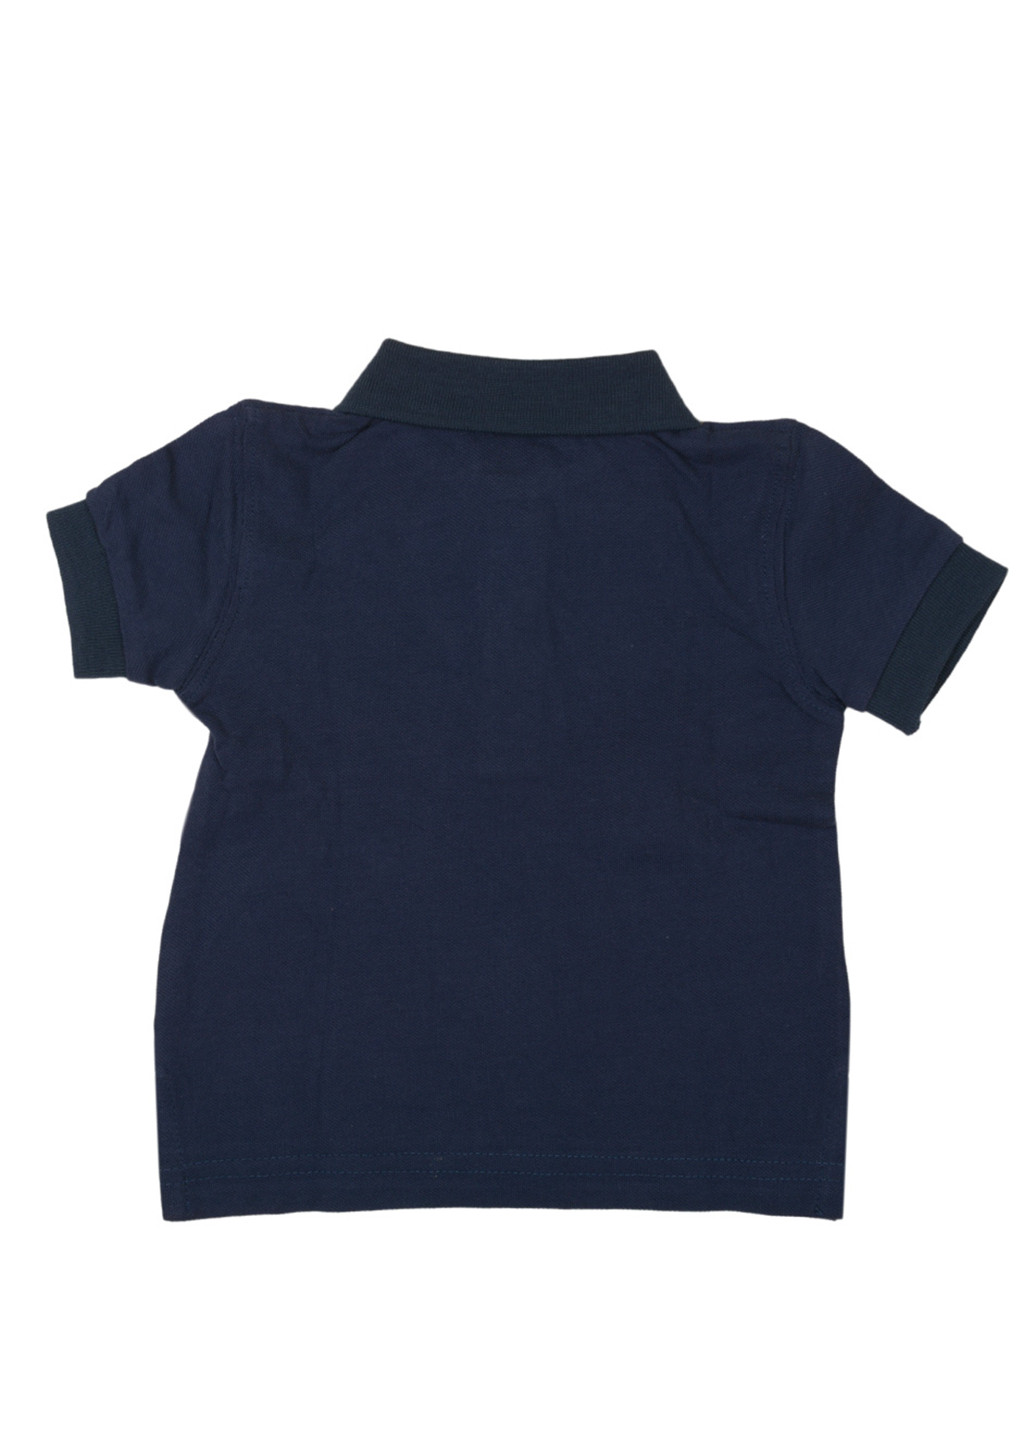 Темно-синяя детская футболка-поло для мальчика Ele-Baby однотонная